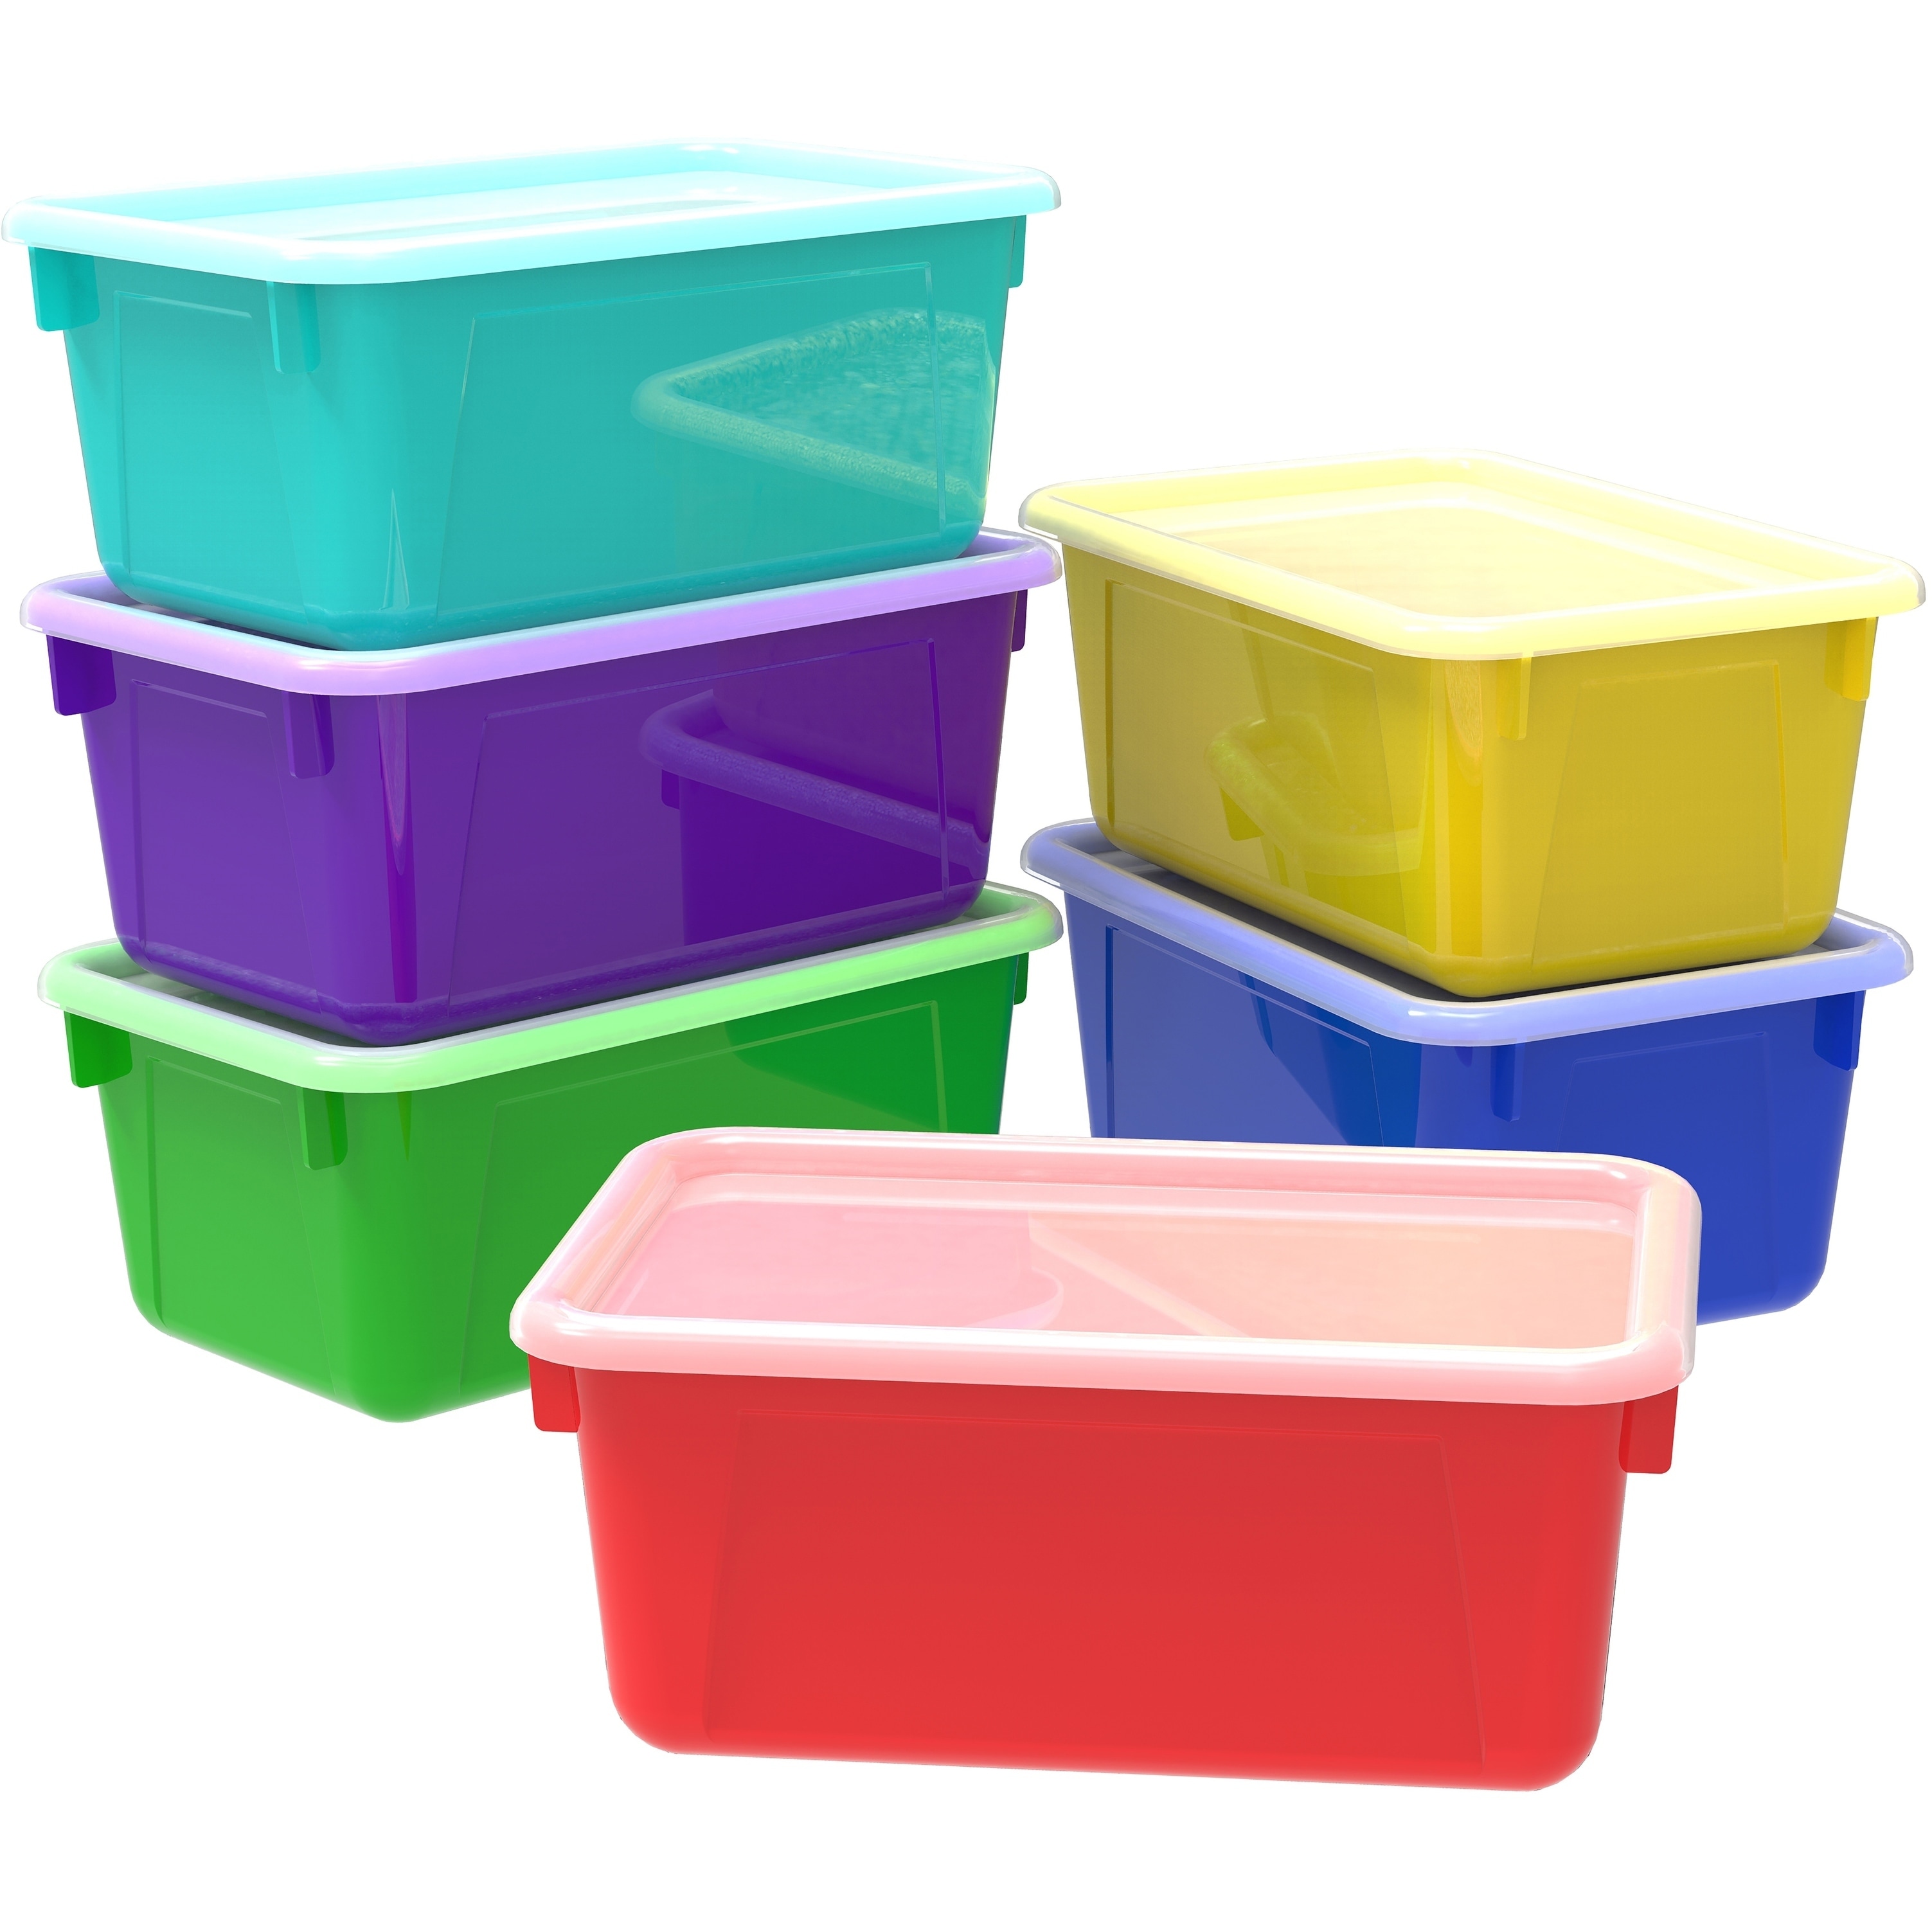 Пластиковые контейнеры купить в спб. Контейнеры для хранения разноцветные. Пластмассовые контейнеры. Контейнеры для хранения пластиковые. Контейнер пластиковый цветной.